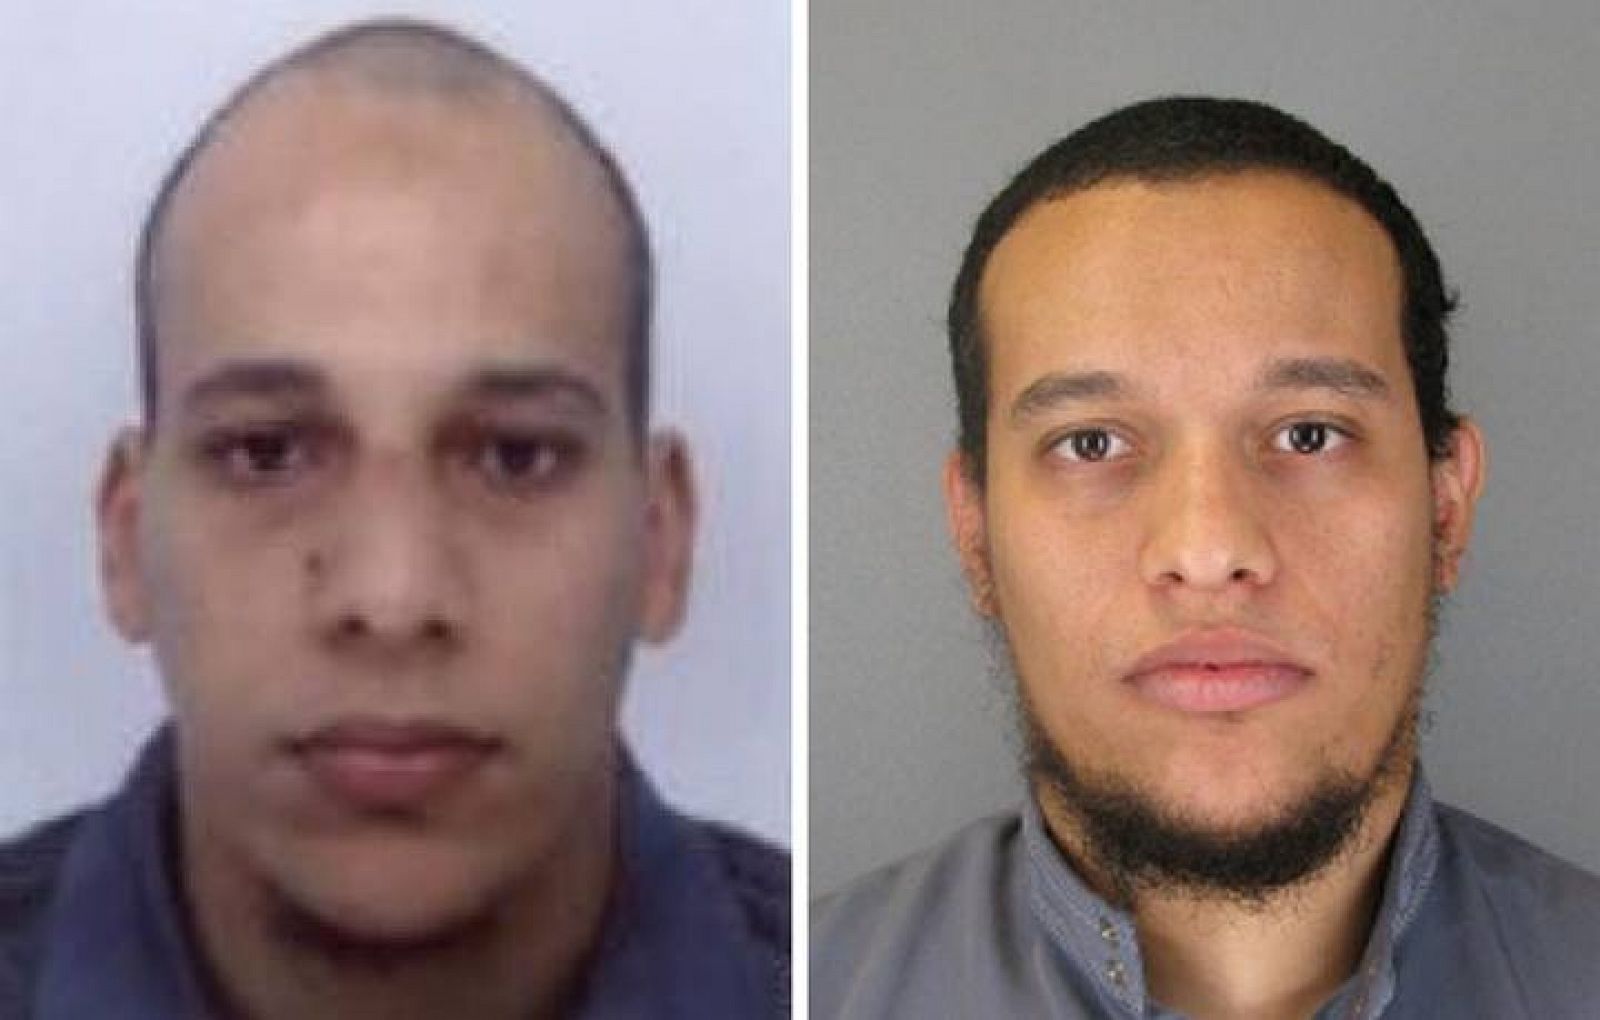  De izquierda a derecha, Chérif Kouachi, de 32 años, y su hermano Said, de 34, sospechosos del atentado en París. 